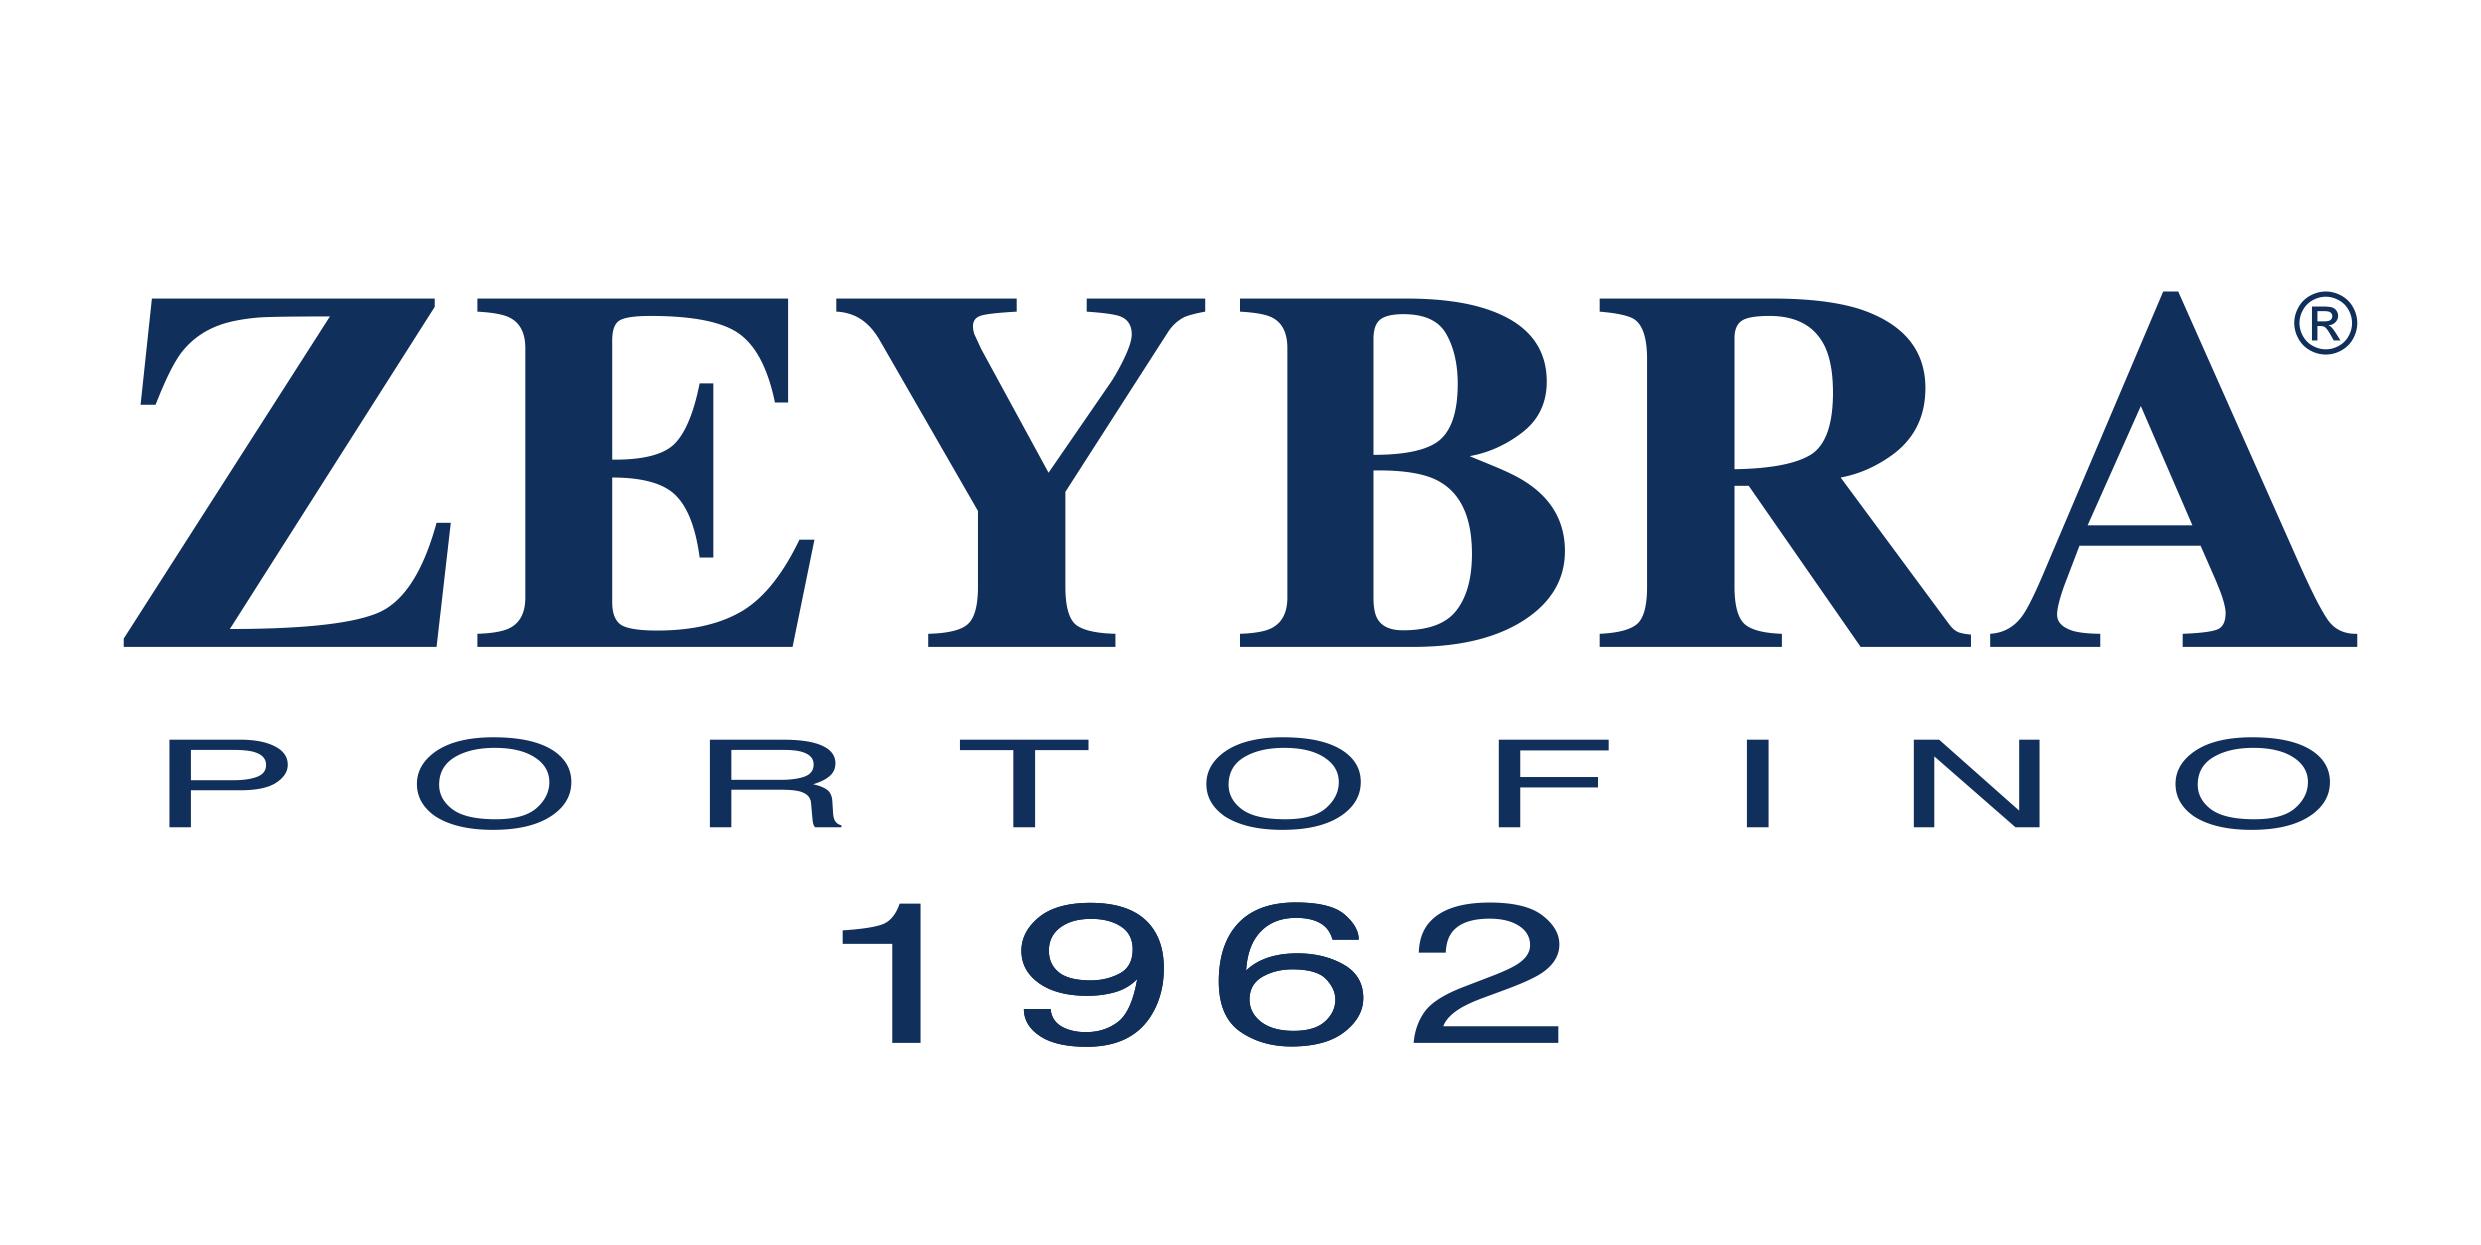 Zeybra Portofino 1962 logo